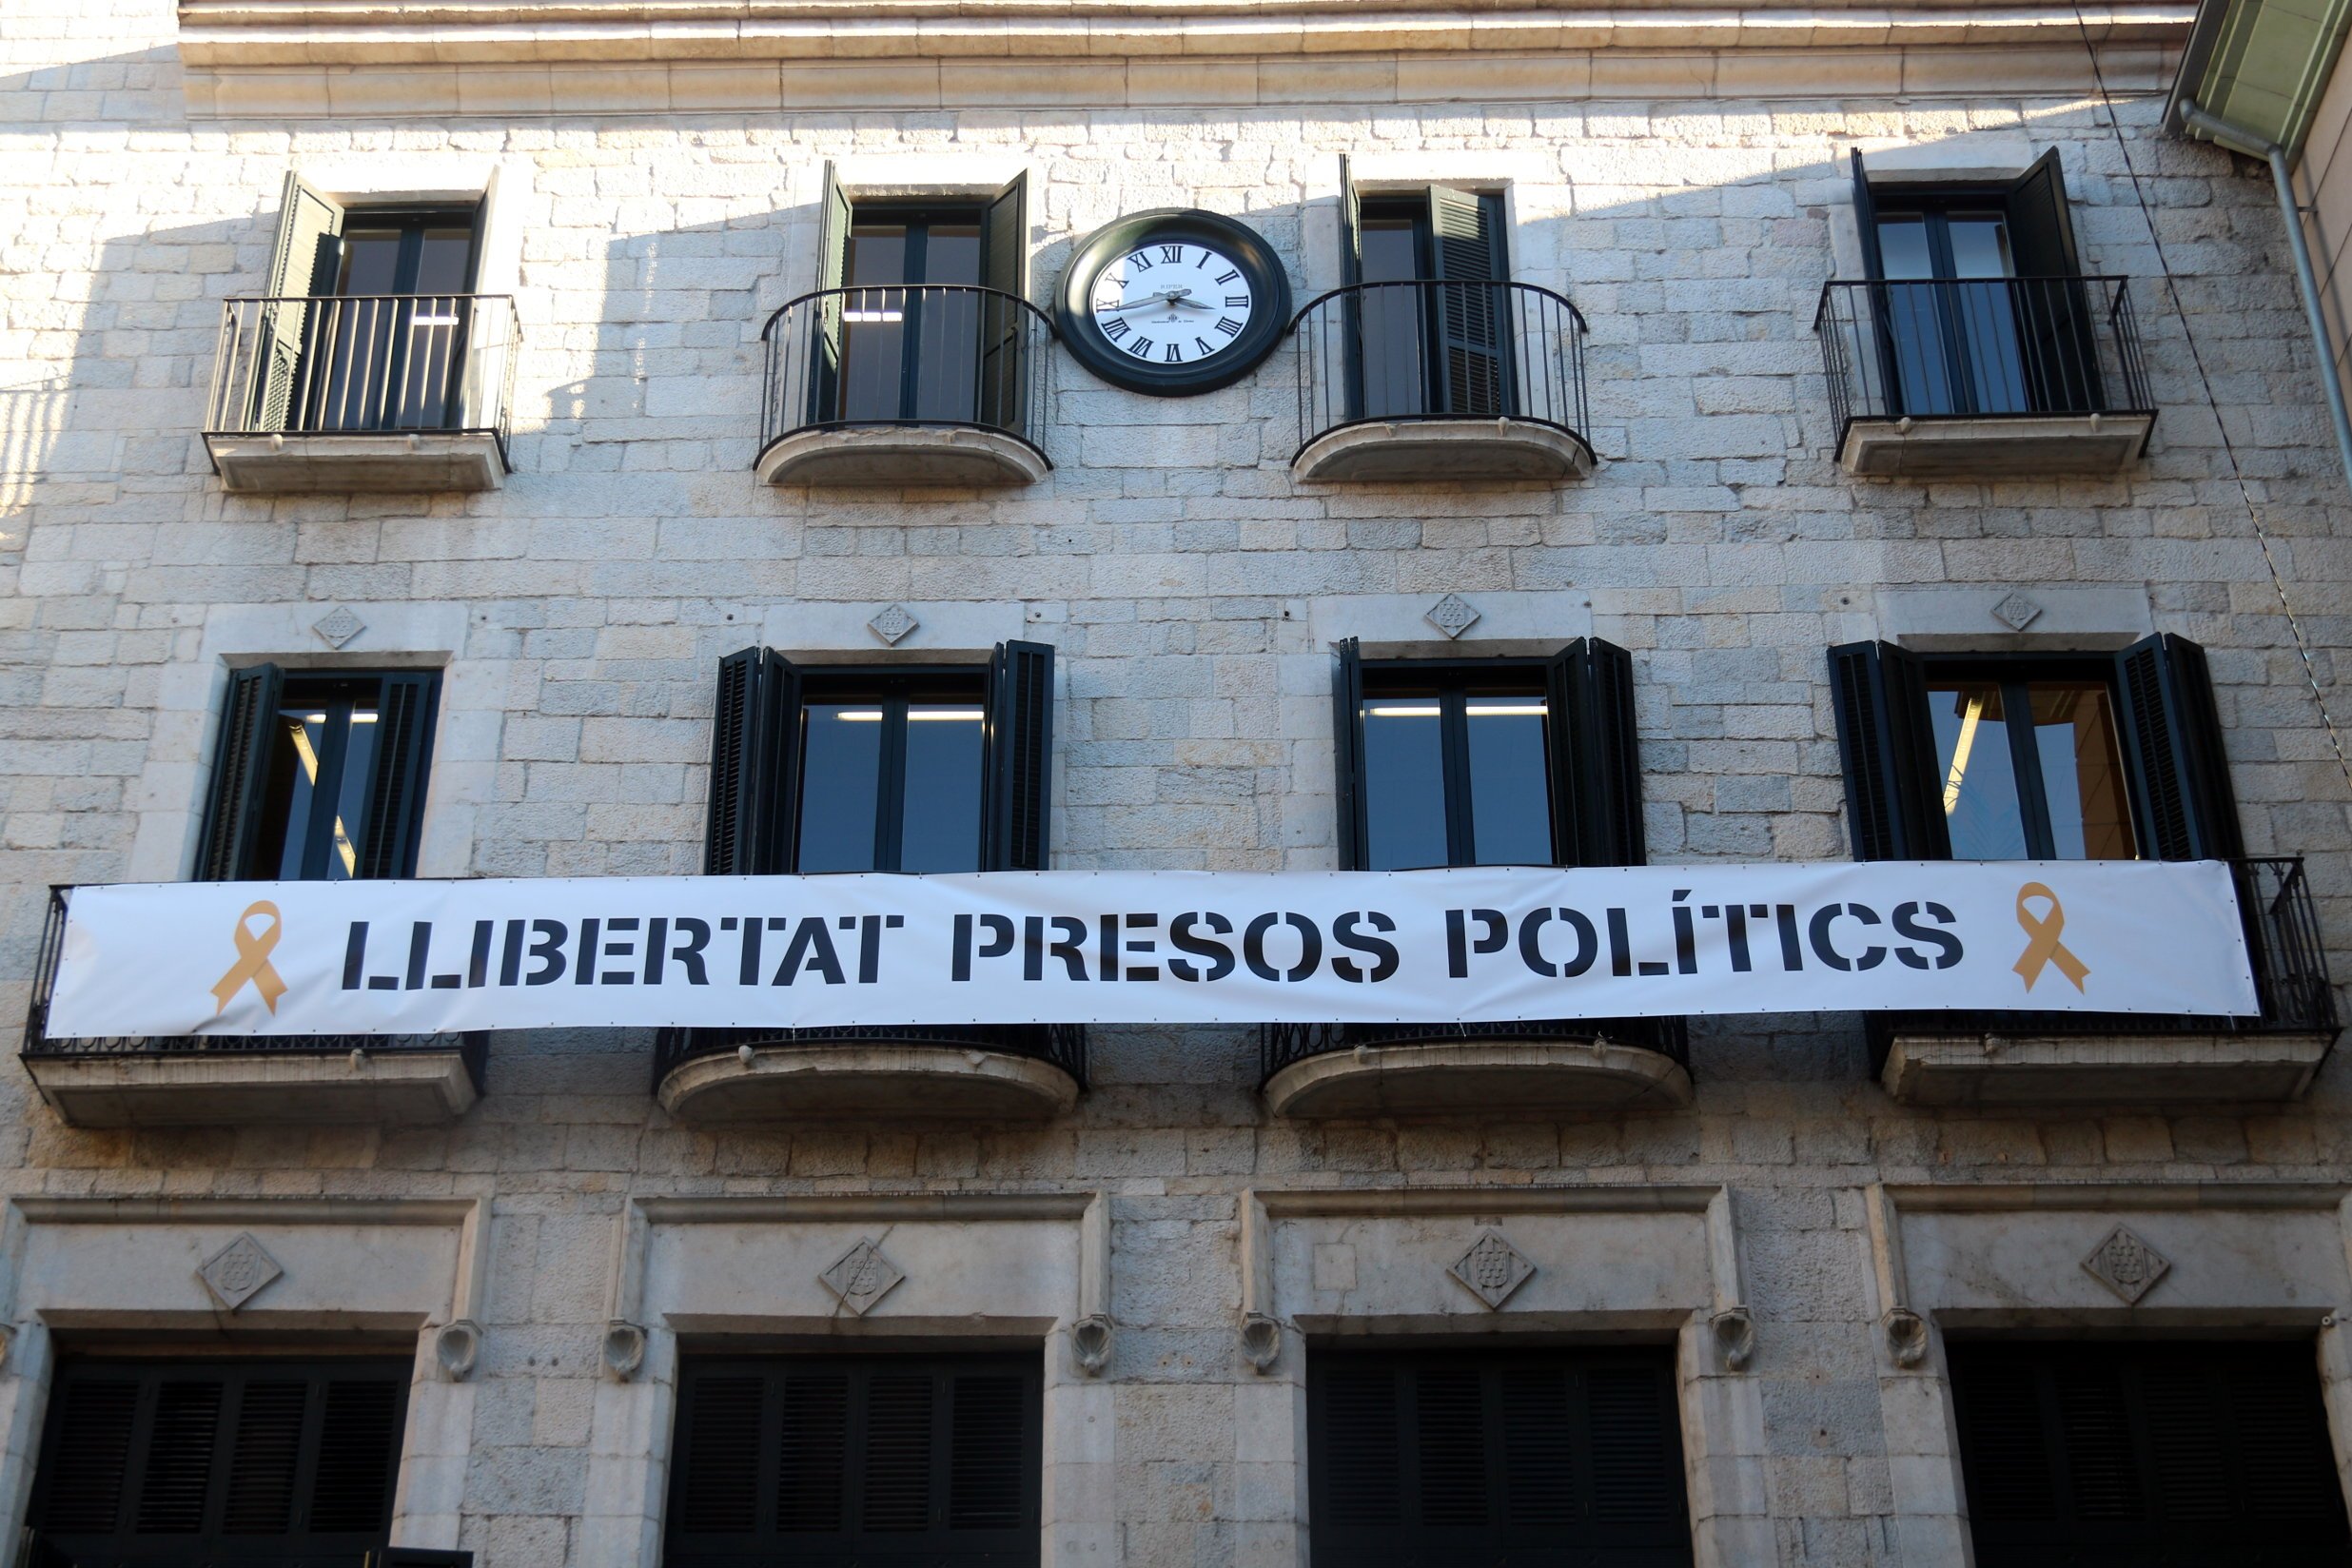 El PP pide a la Junta Electoral que inste a Madrenas a retirar los lazos